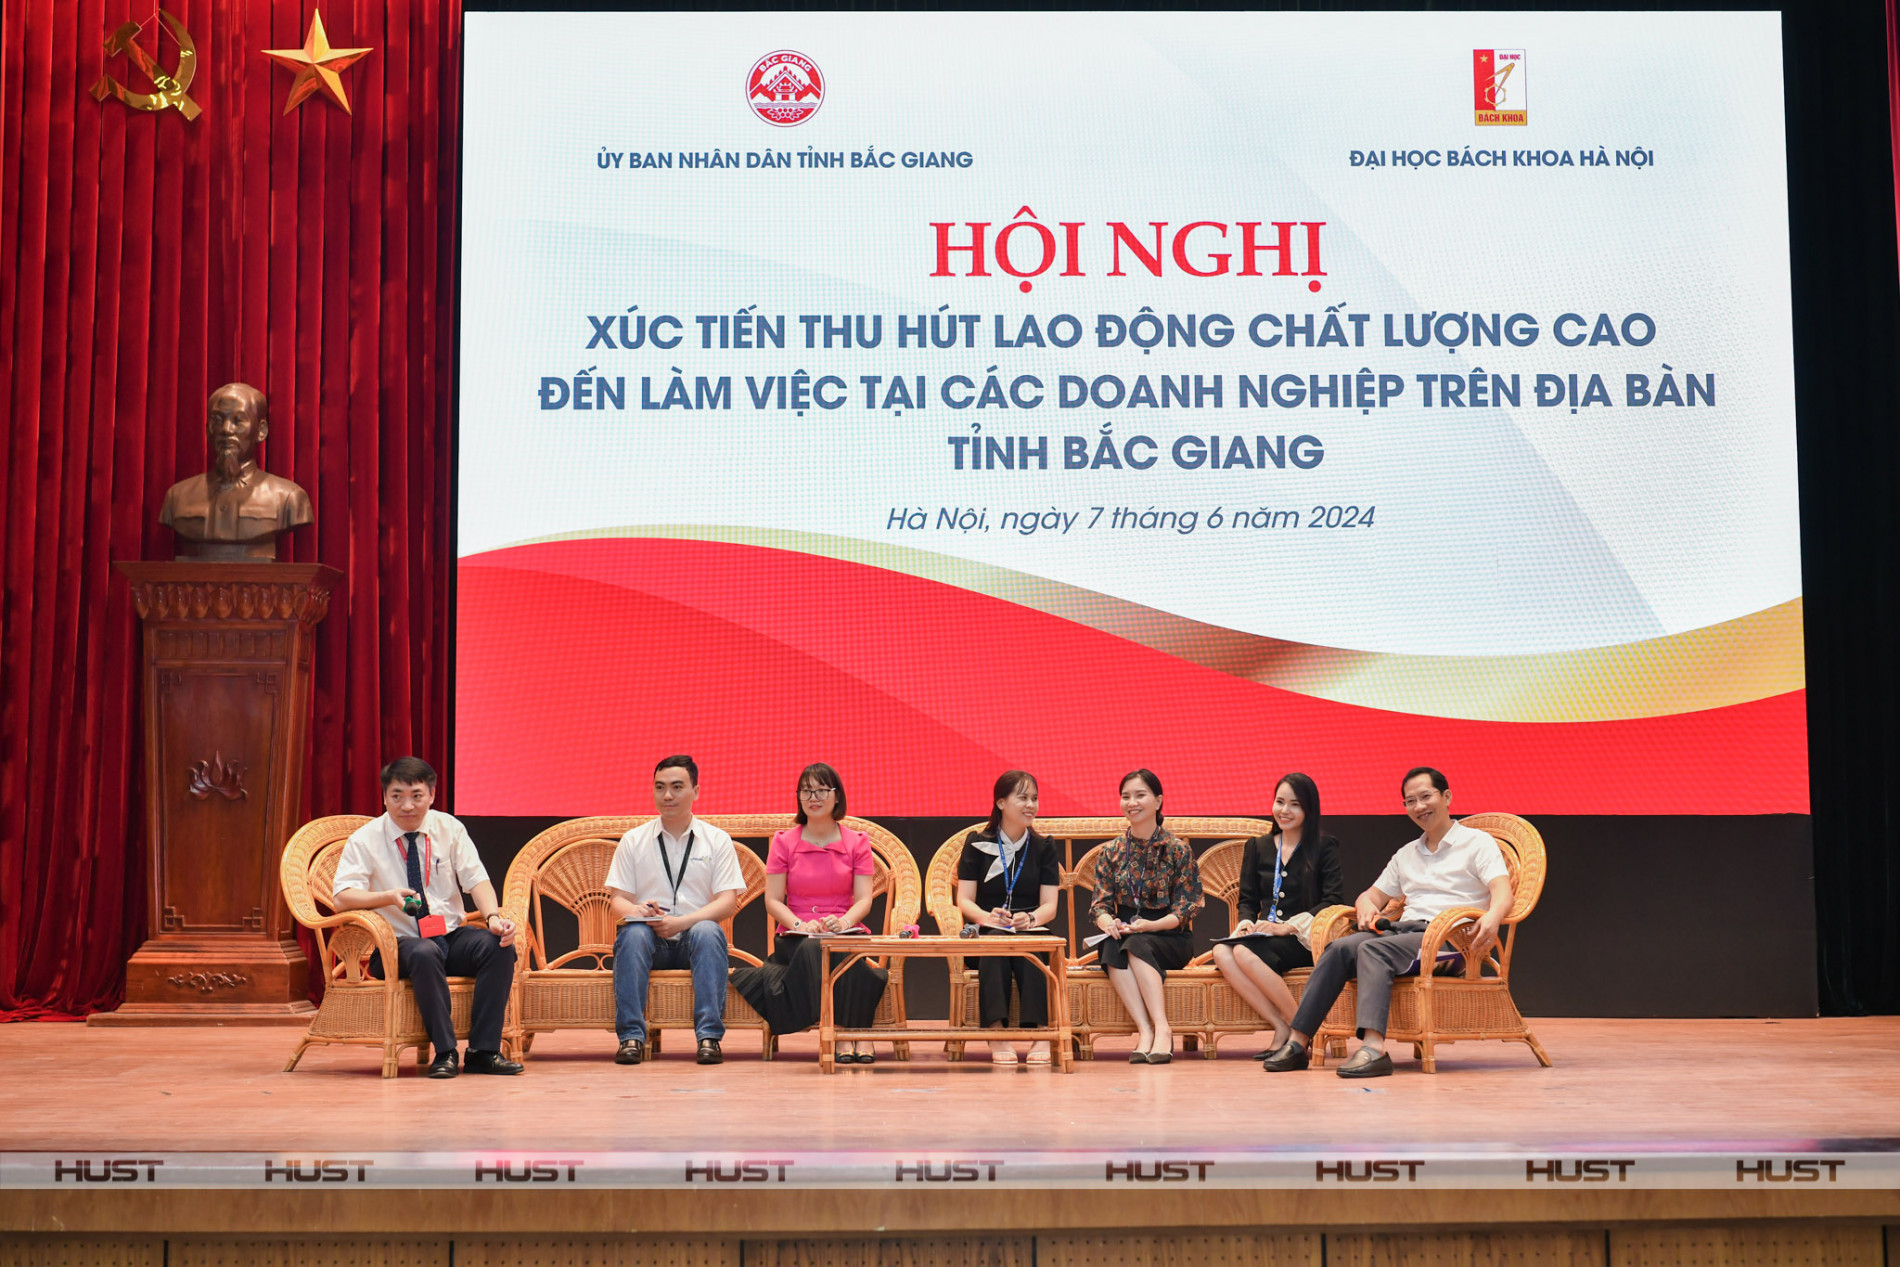 Lãnh đạo ĐHBK Hà Nội và tỉnh Bắc Giang cùng đại diện các doanh nghiệp trao đổi trực tiếp với sinh viên Bách khoa Hà Nội